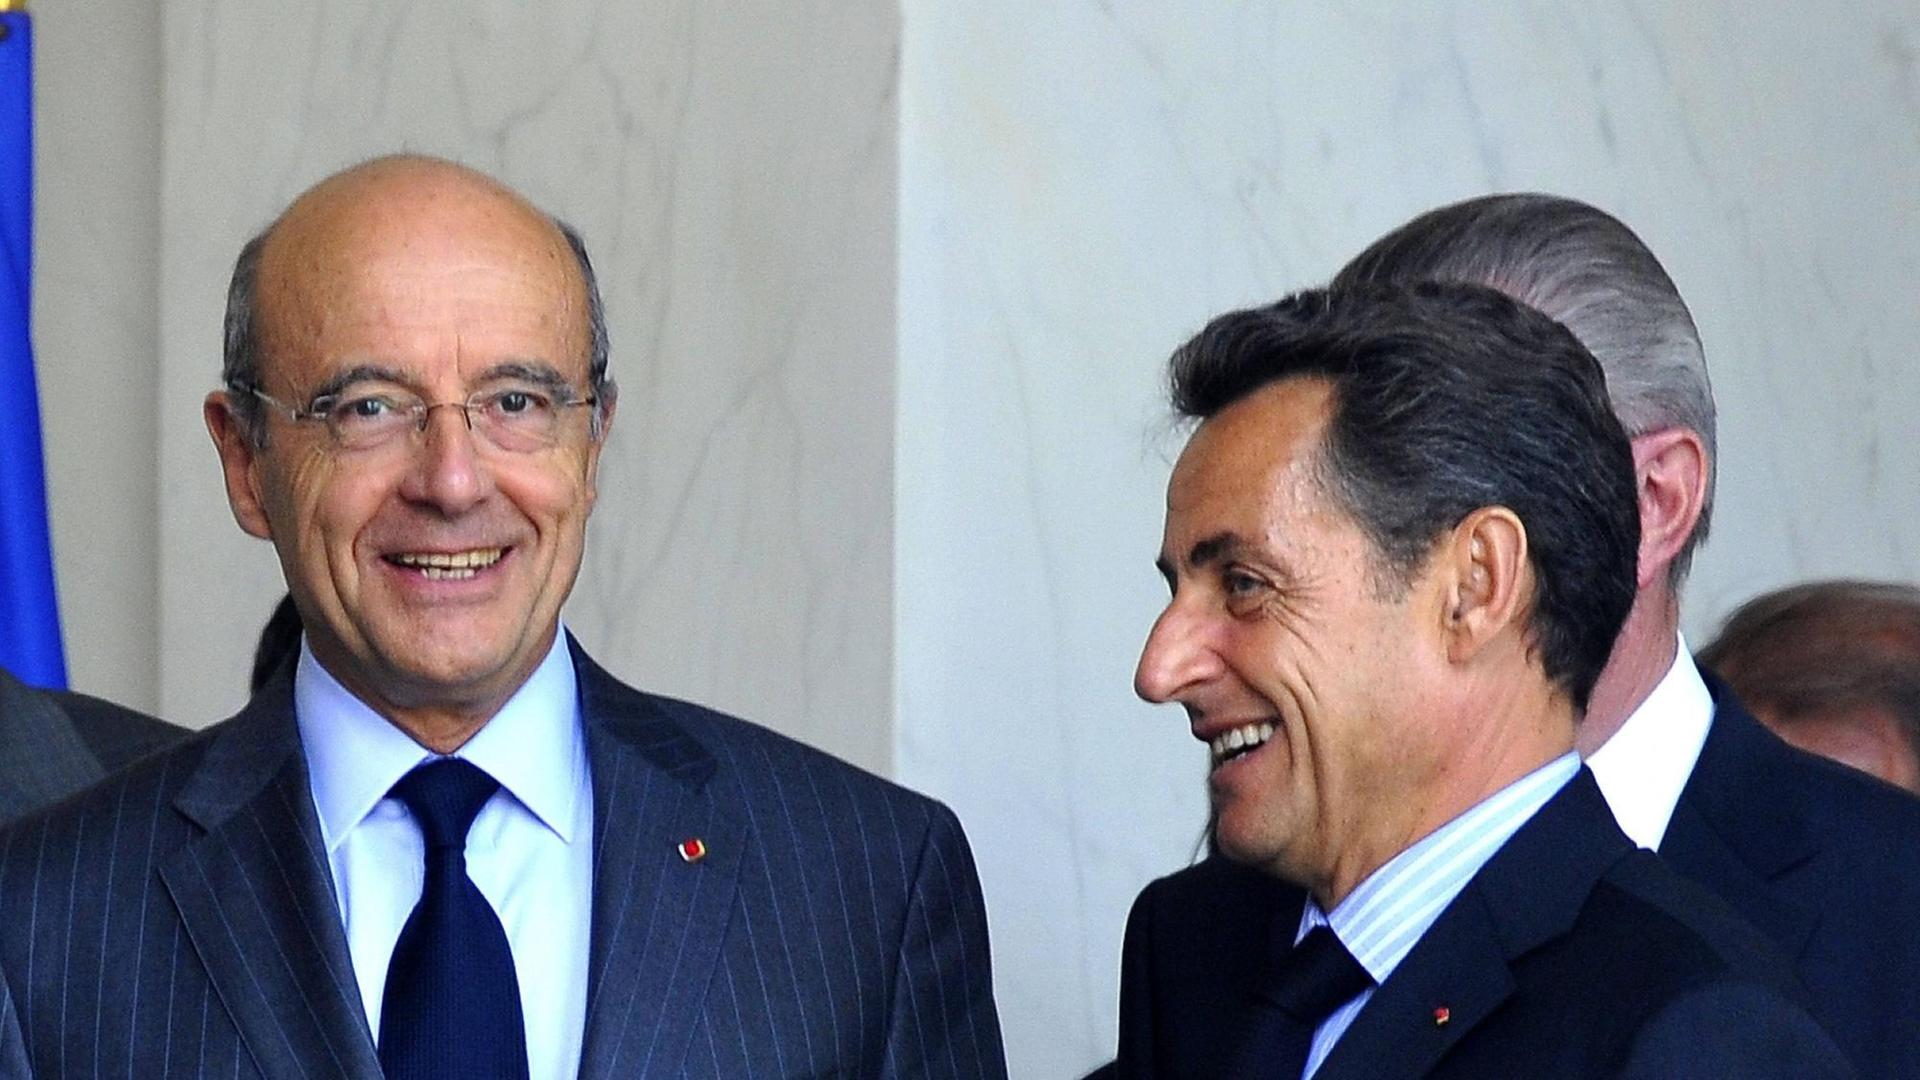 Nicolas Sarkozy (rechts) und Alain Juppe im Juli 2011 als Präsident und Außenminister vor dem Besuch des Präsidenten der Republik Niger in Paris.